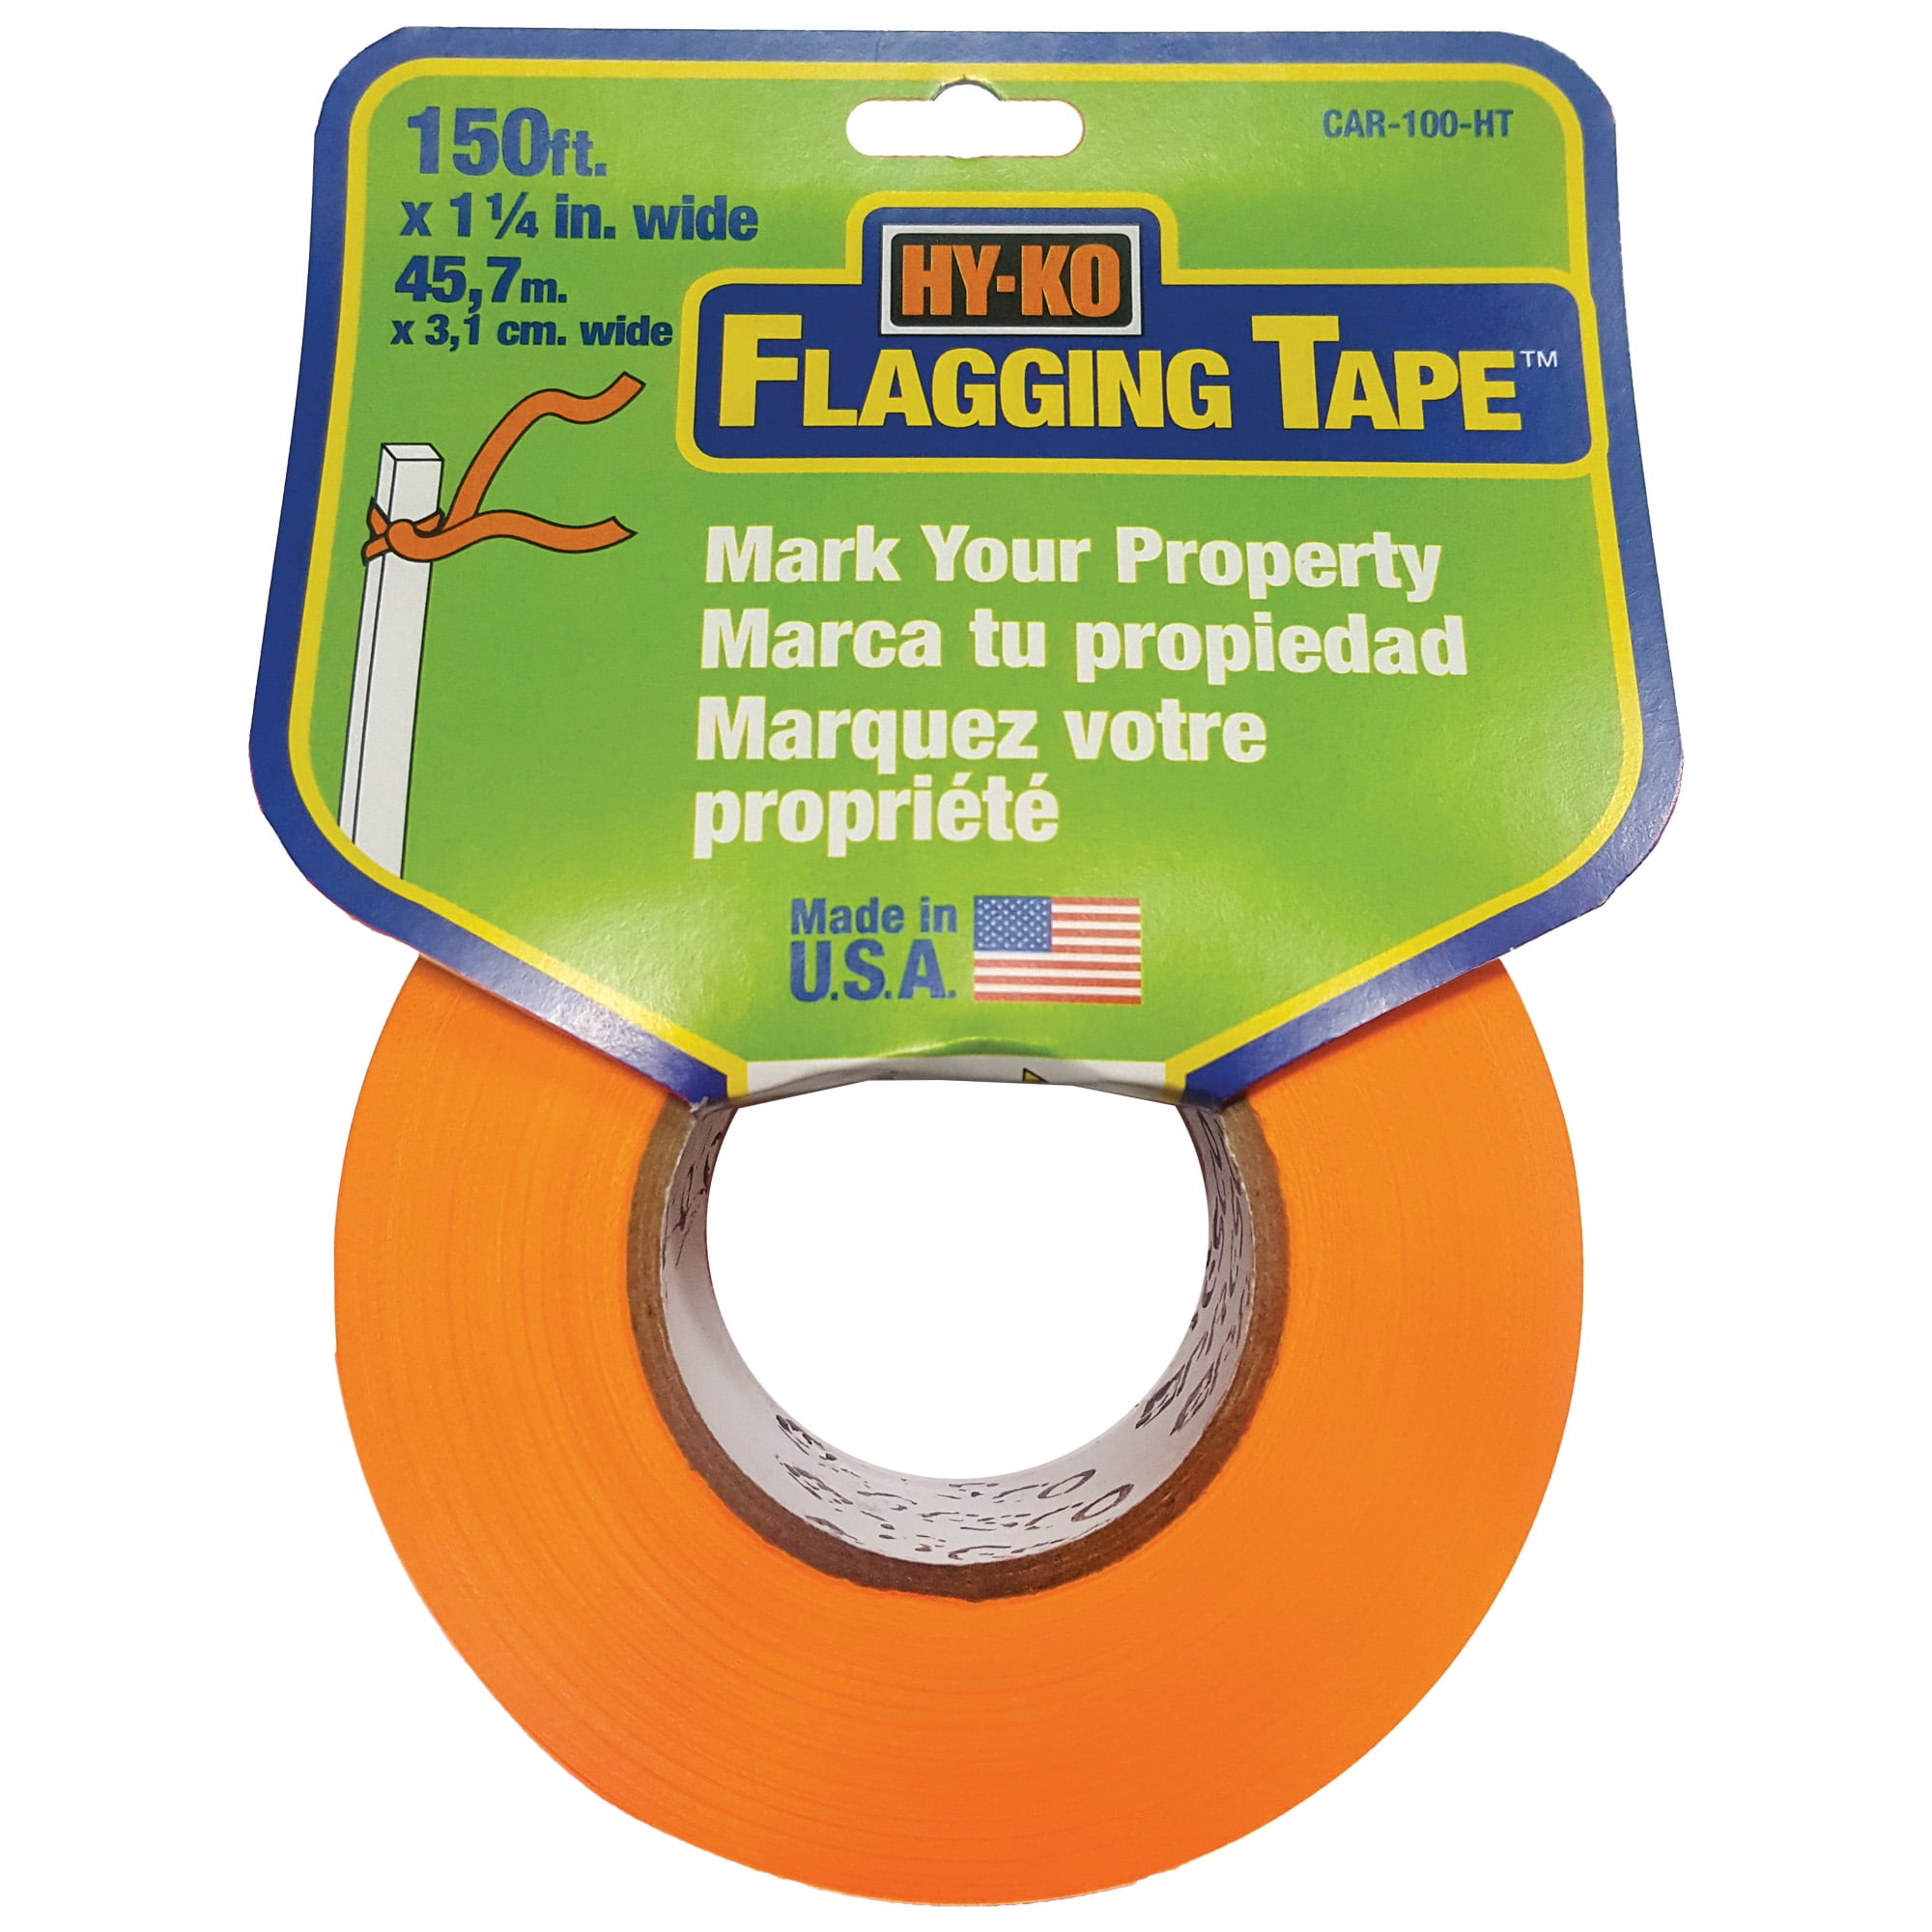 Tundra Heavy Flagging Tape - 150